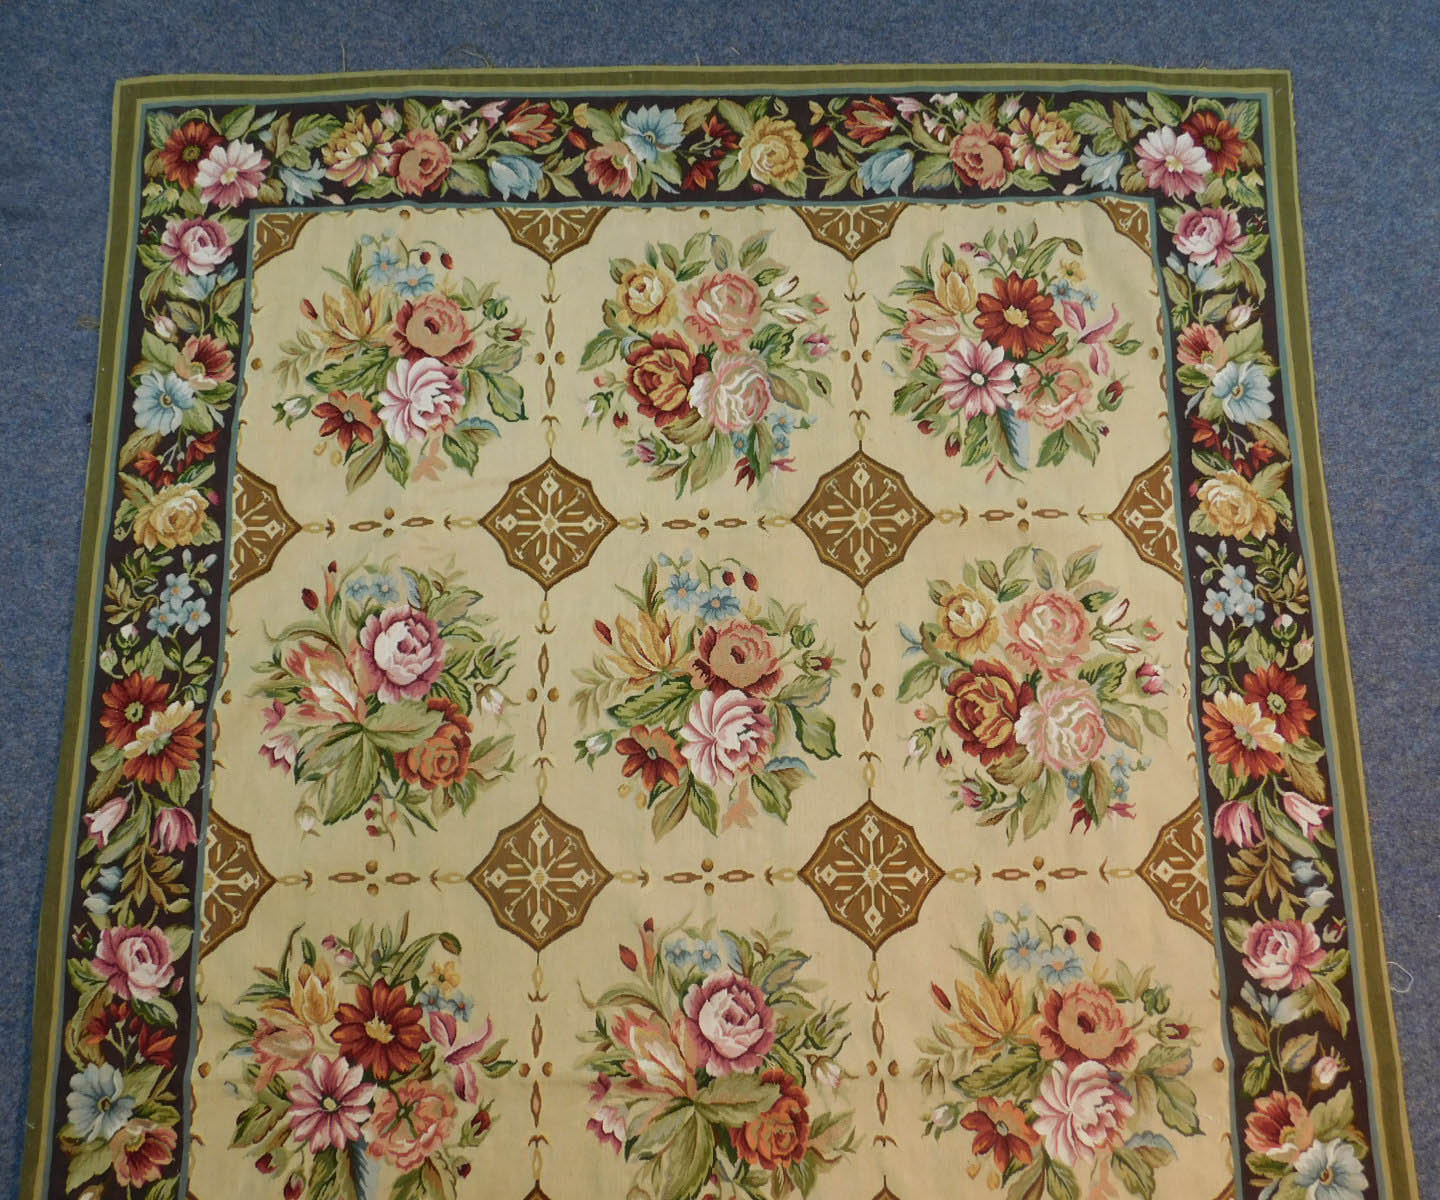 Teppich in Aubusson Technik und Louis XVI Stil. - Image 3 of 6